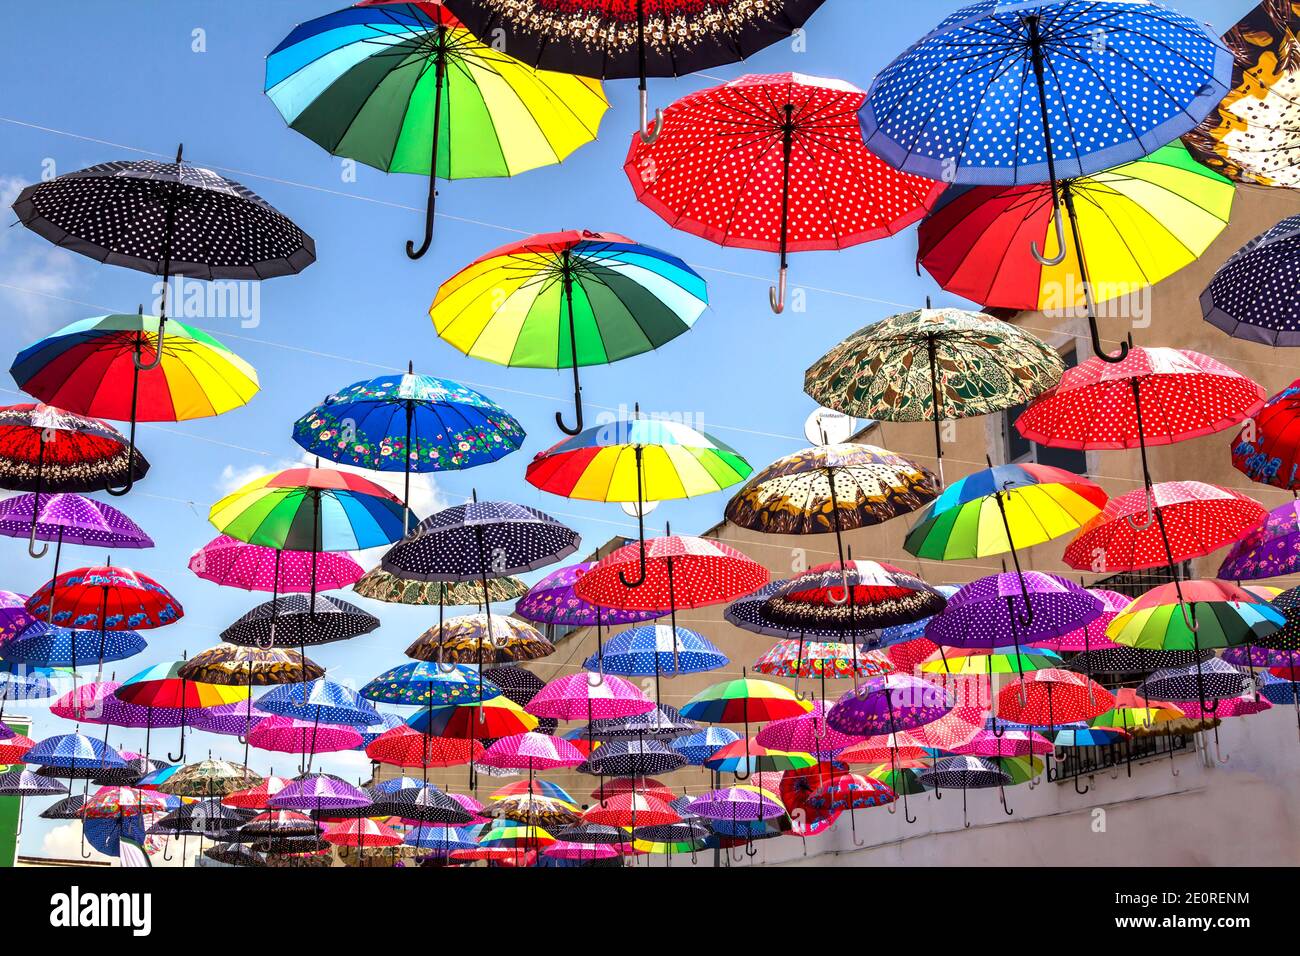 Toit de parapluie Banque de photographies et d'images à haute résolution -  Alamy